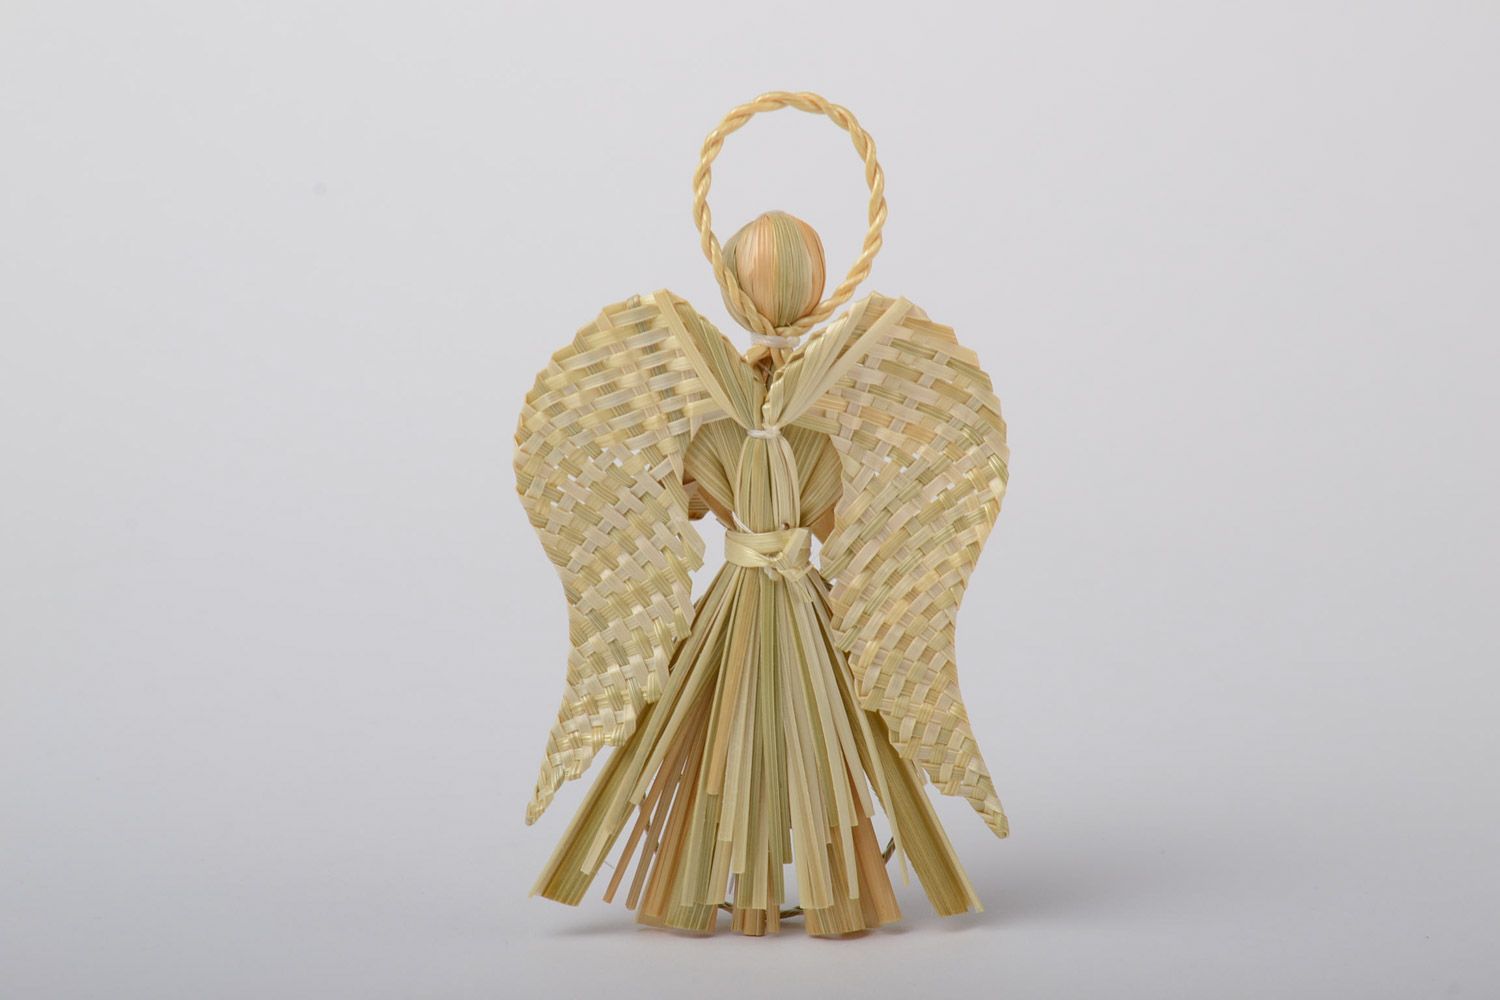 Petite figurine en paille tressée faite main ange amulette originale pour maison photo 3